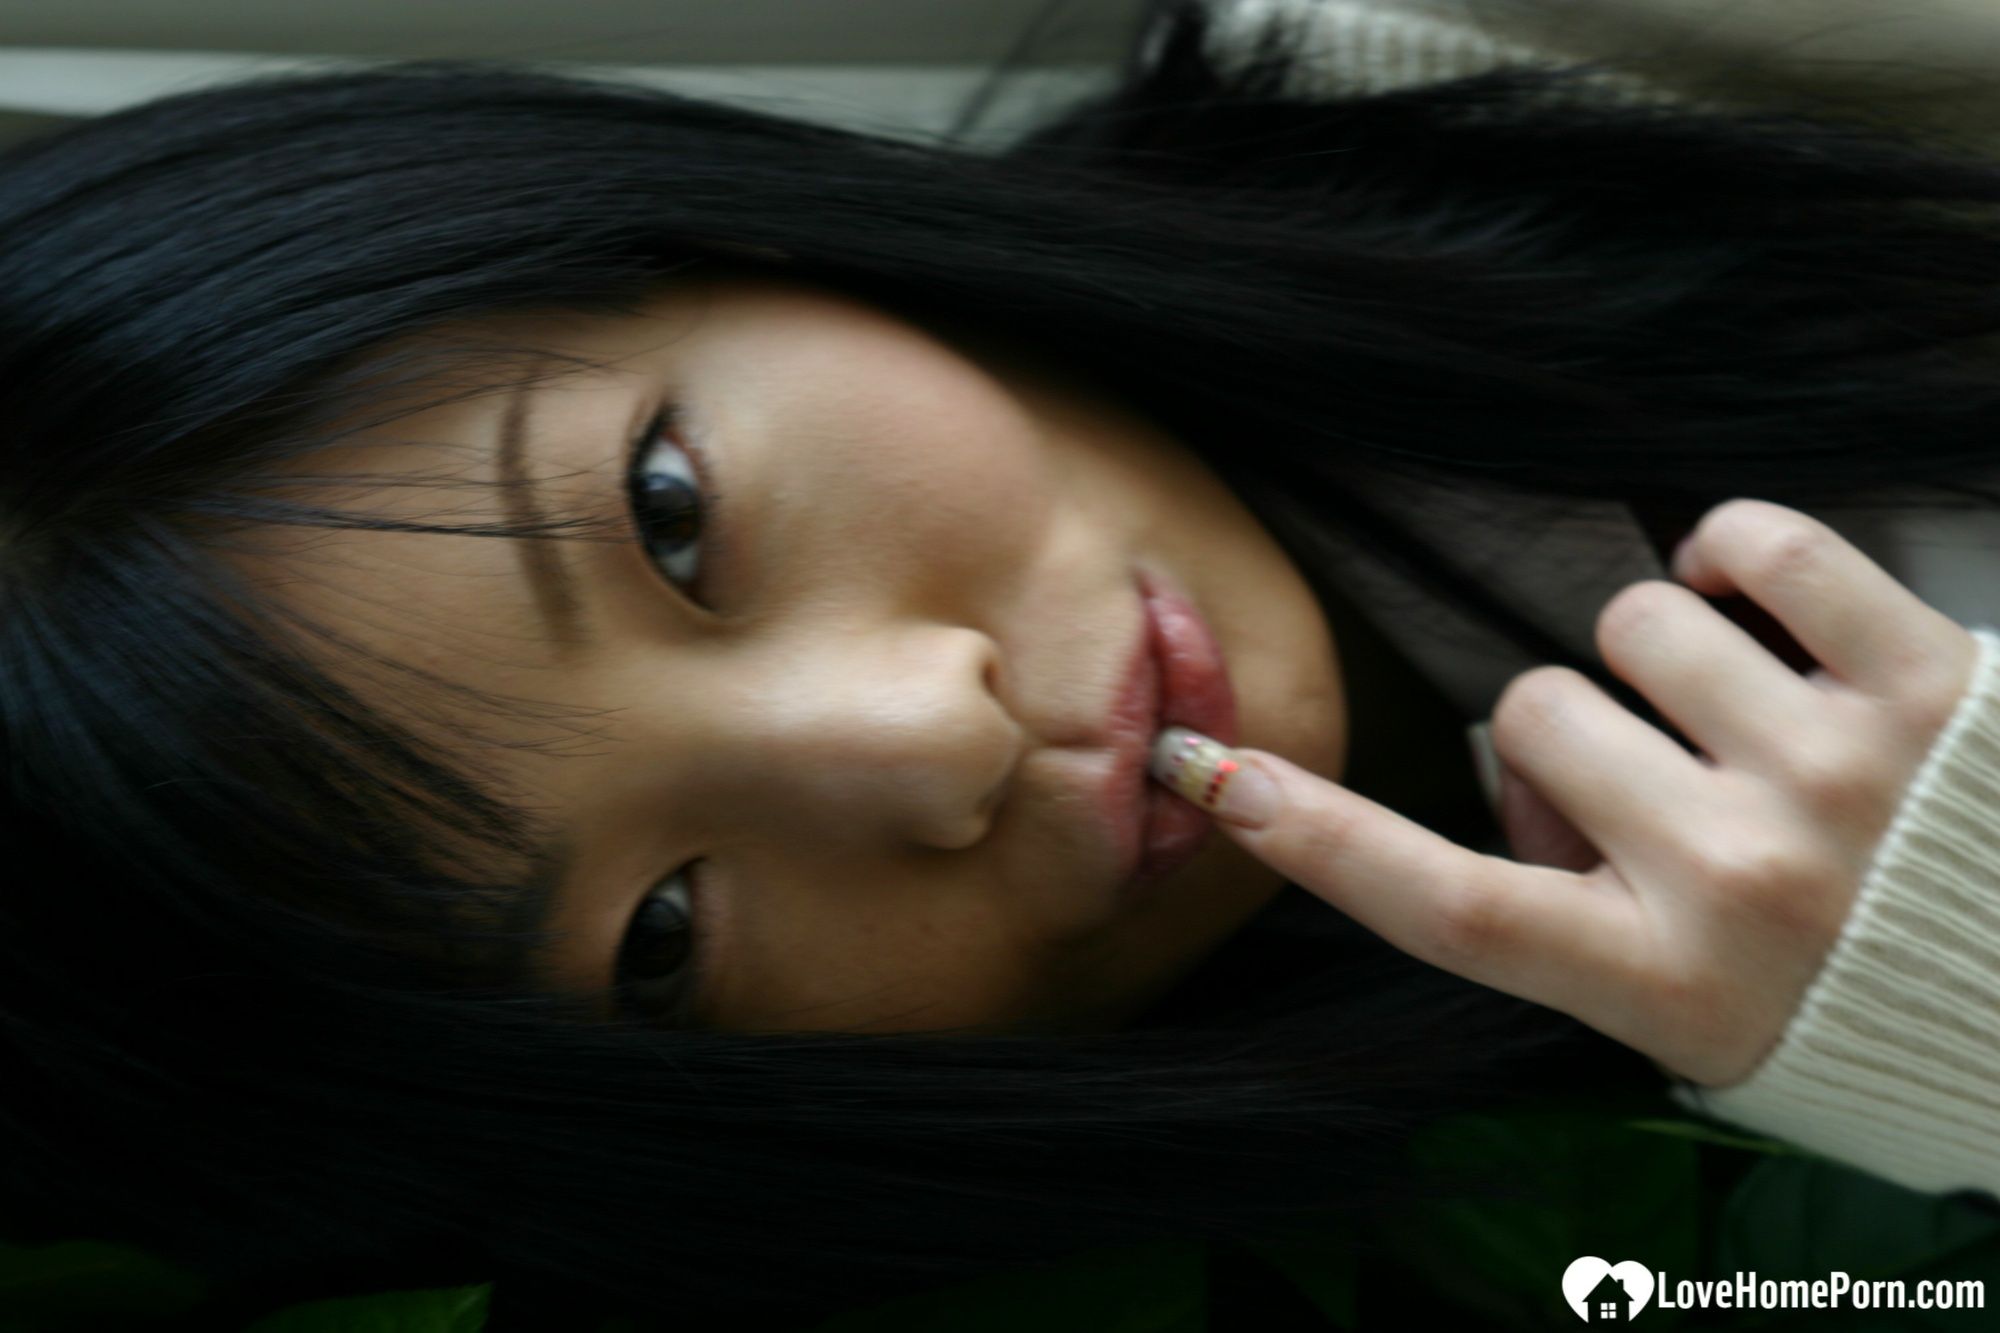 Asian schoolgirl looks for some online exposure #20